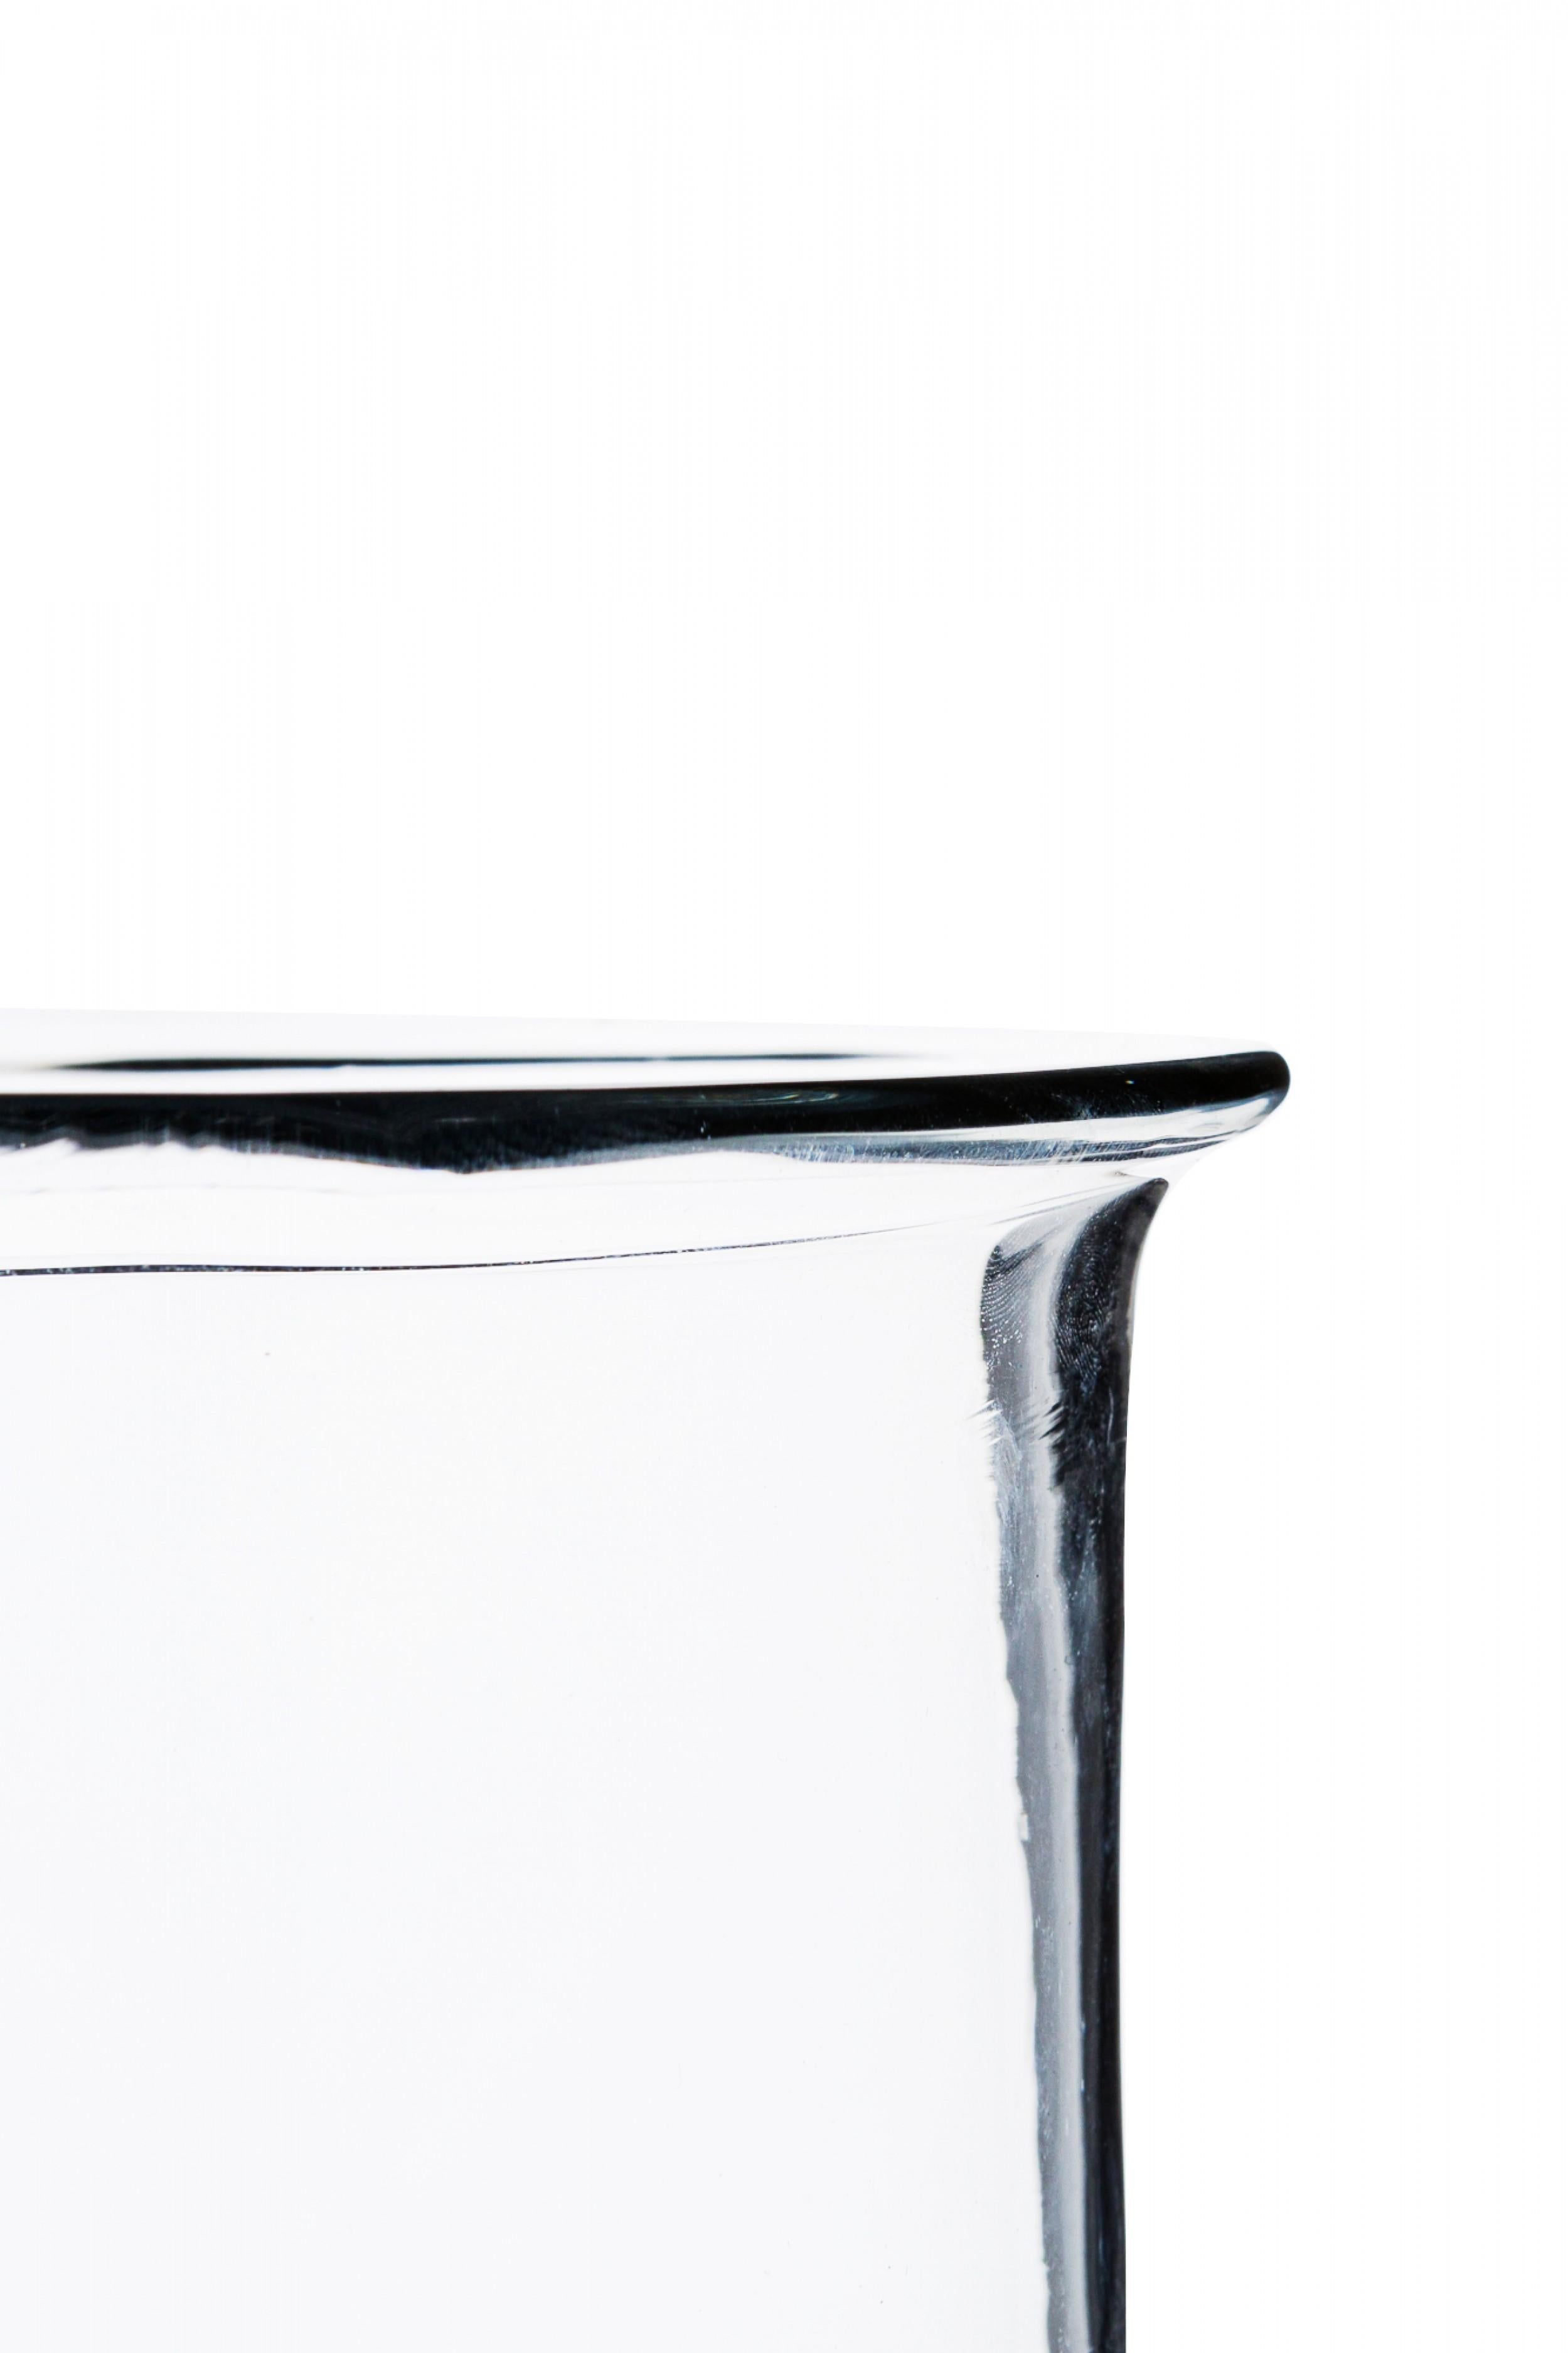 Grand vase cylindrique en verre transparent, de style américain du milieu du siècle, dont la forme rappelle celle d'un bambou. (DON SHEPARD POUR BLENKO GLASS CO.).